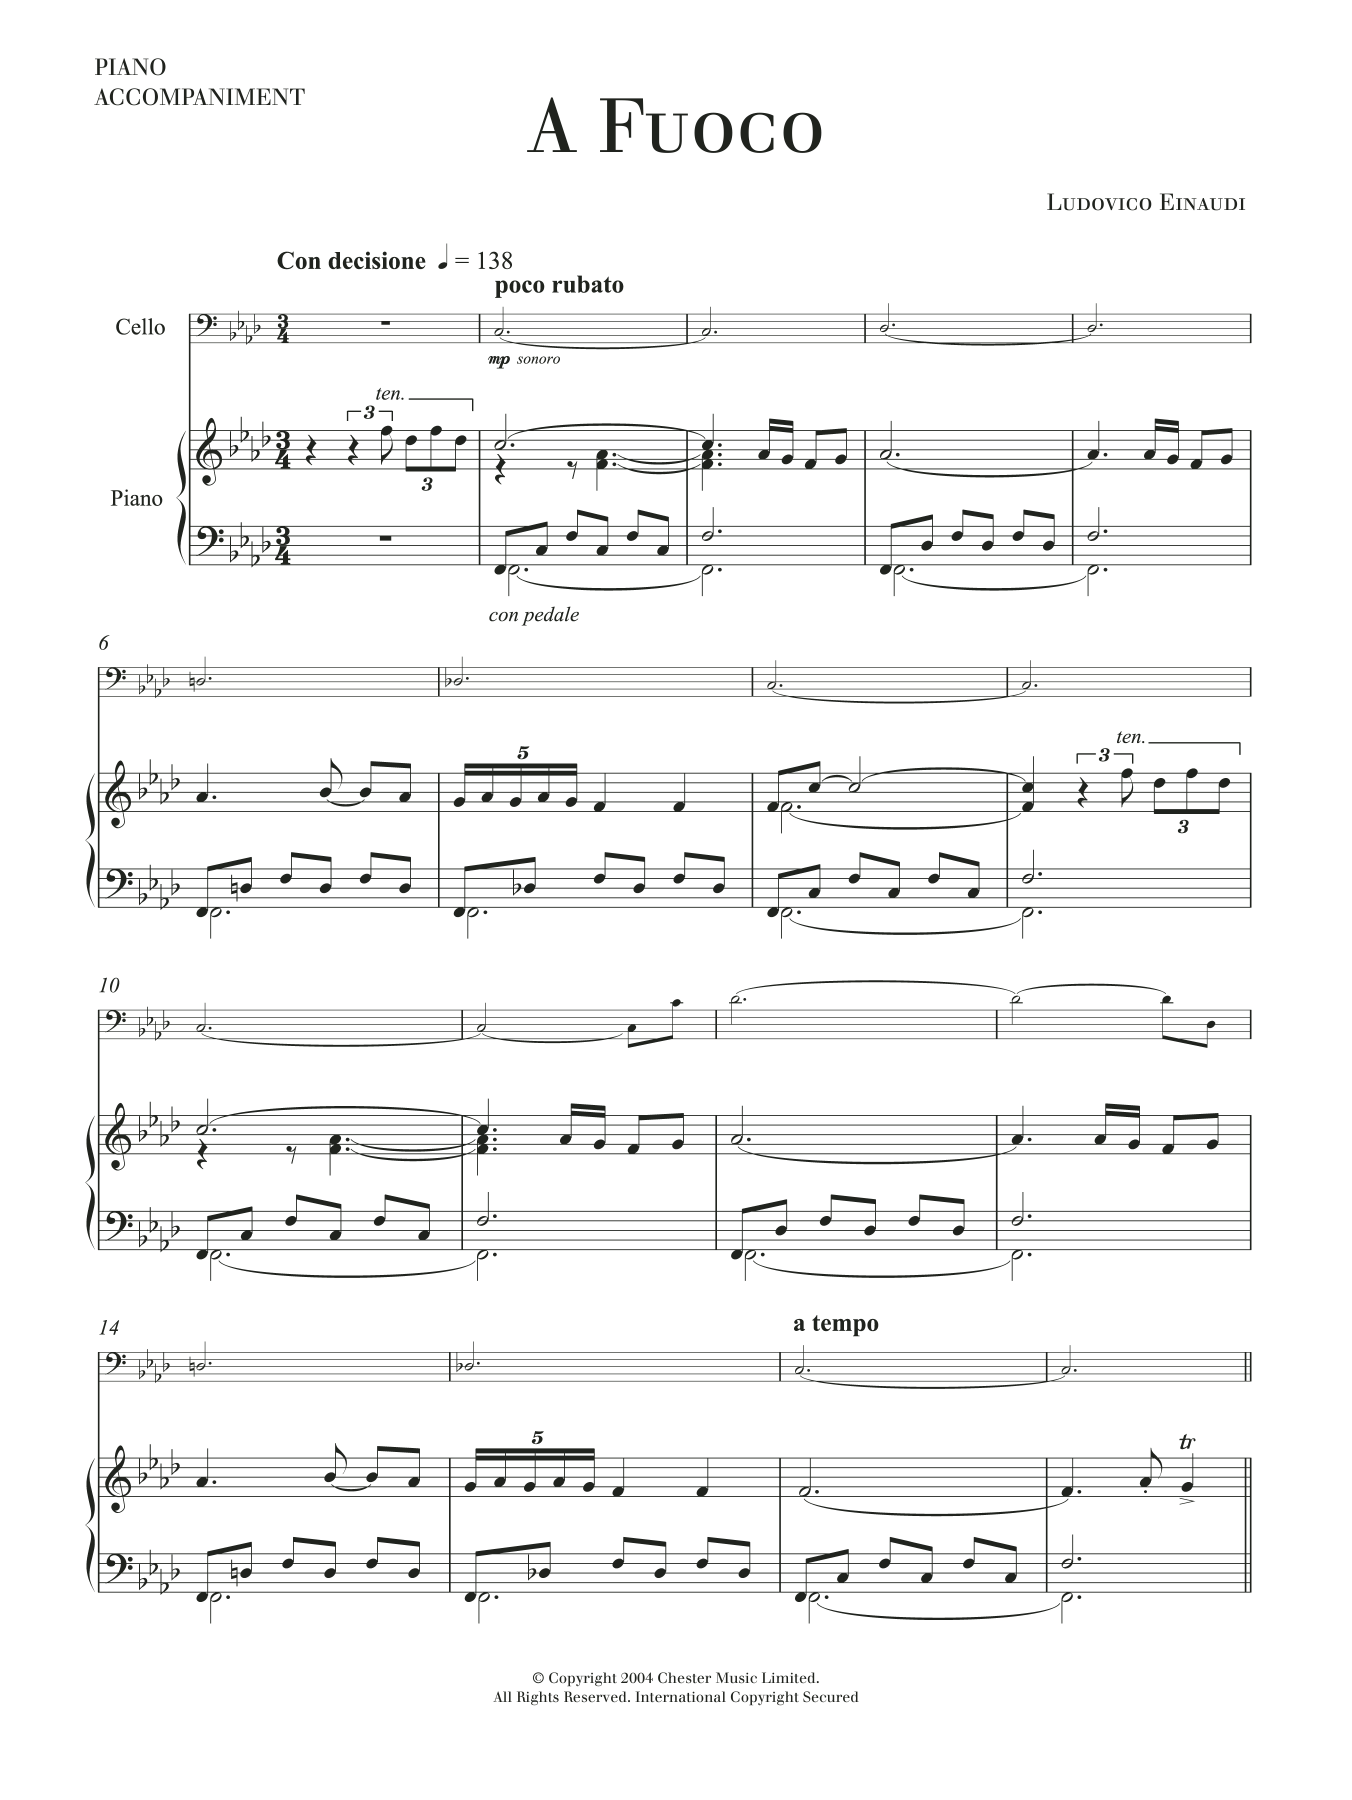 Download Ludovico Einaudi A Fuoco Sheet Music